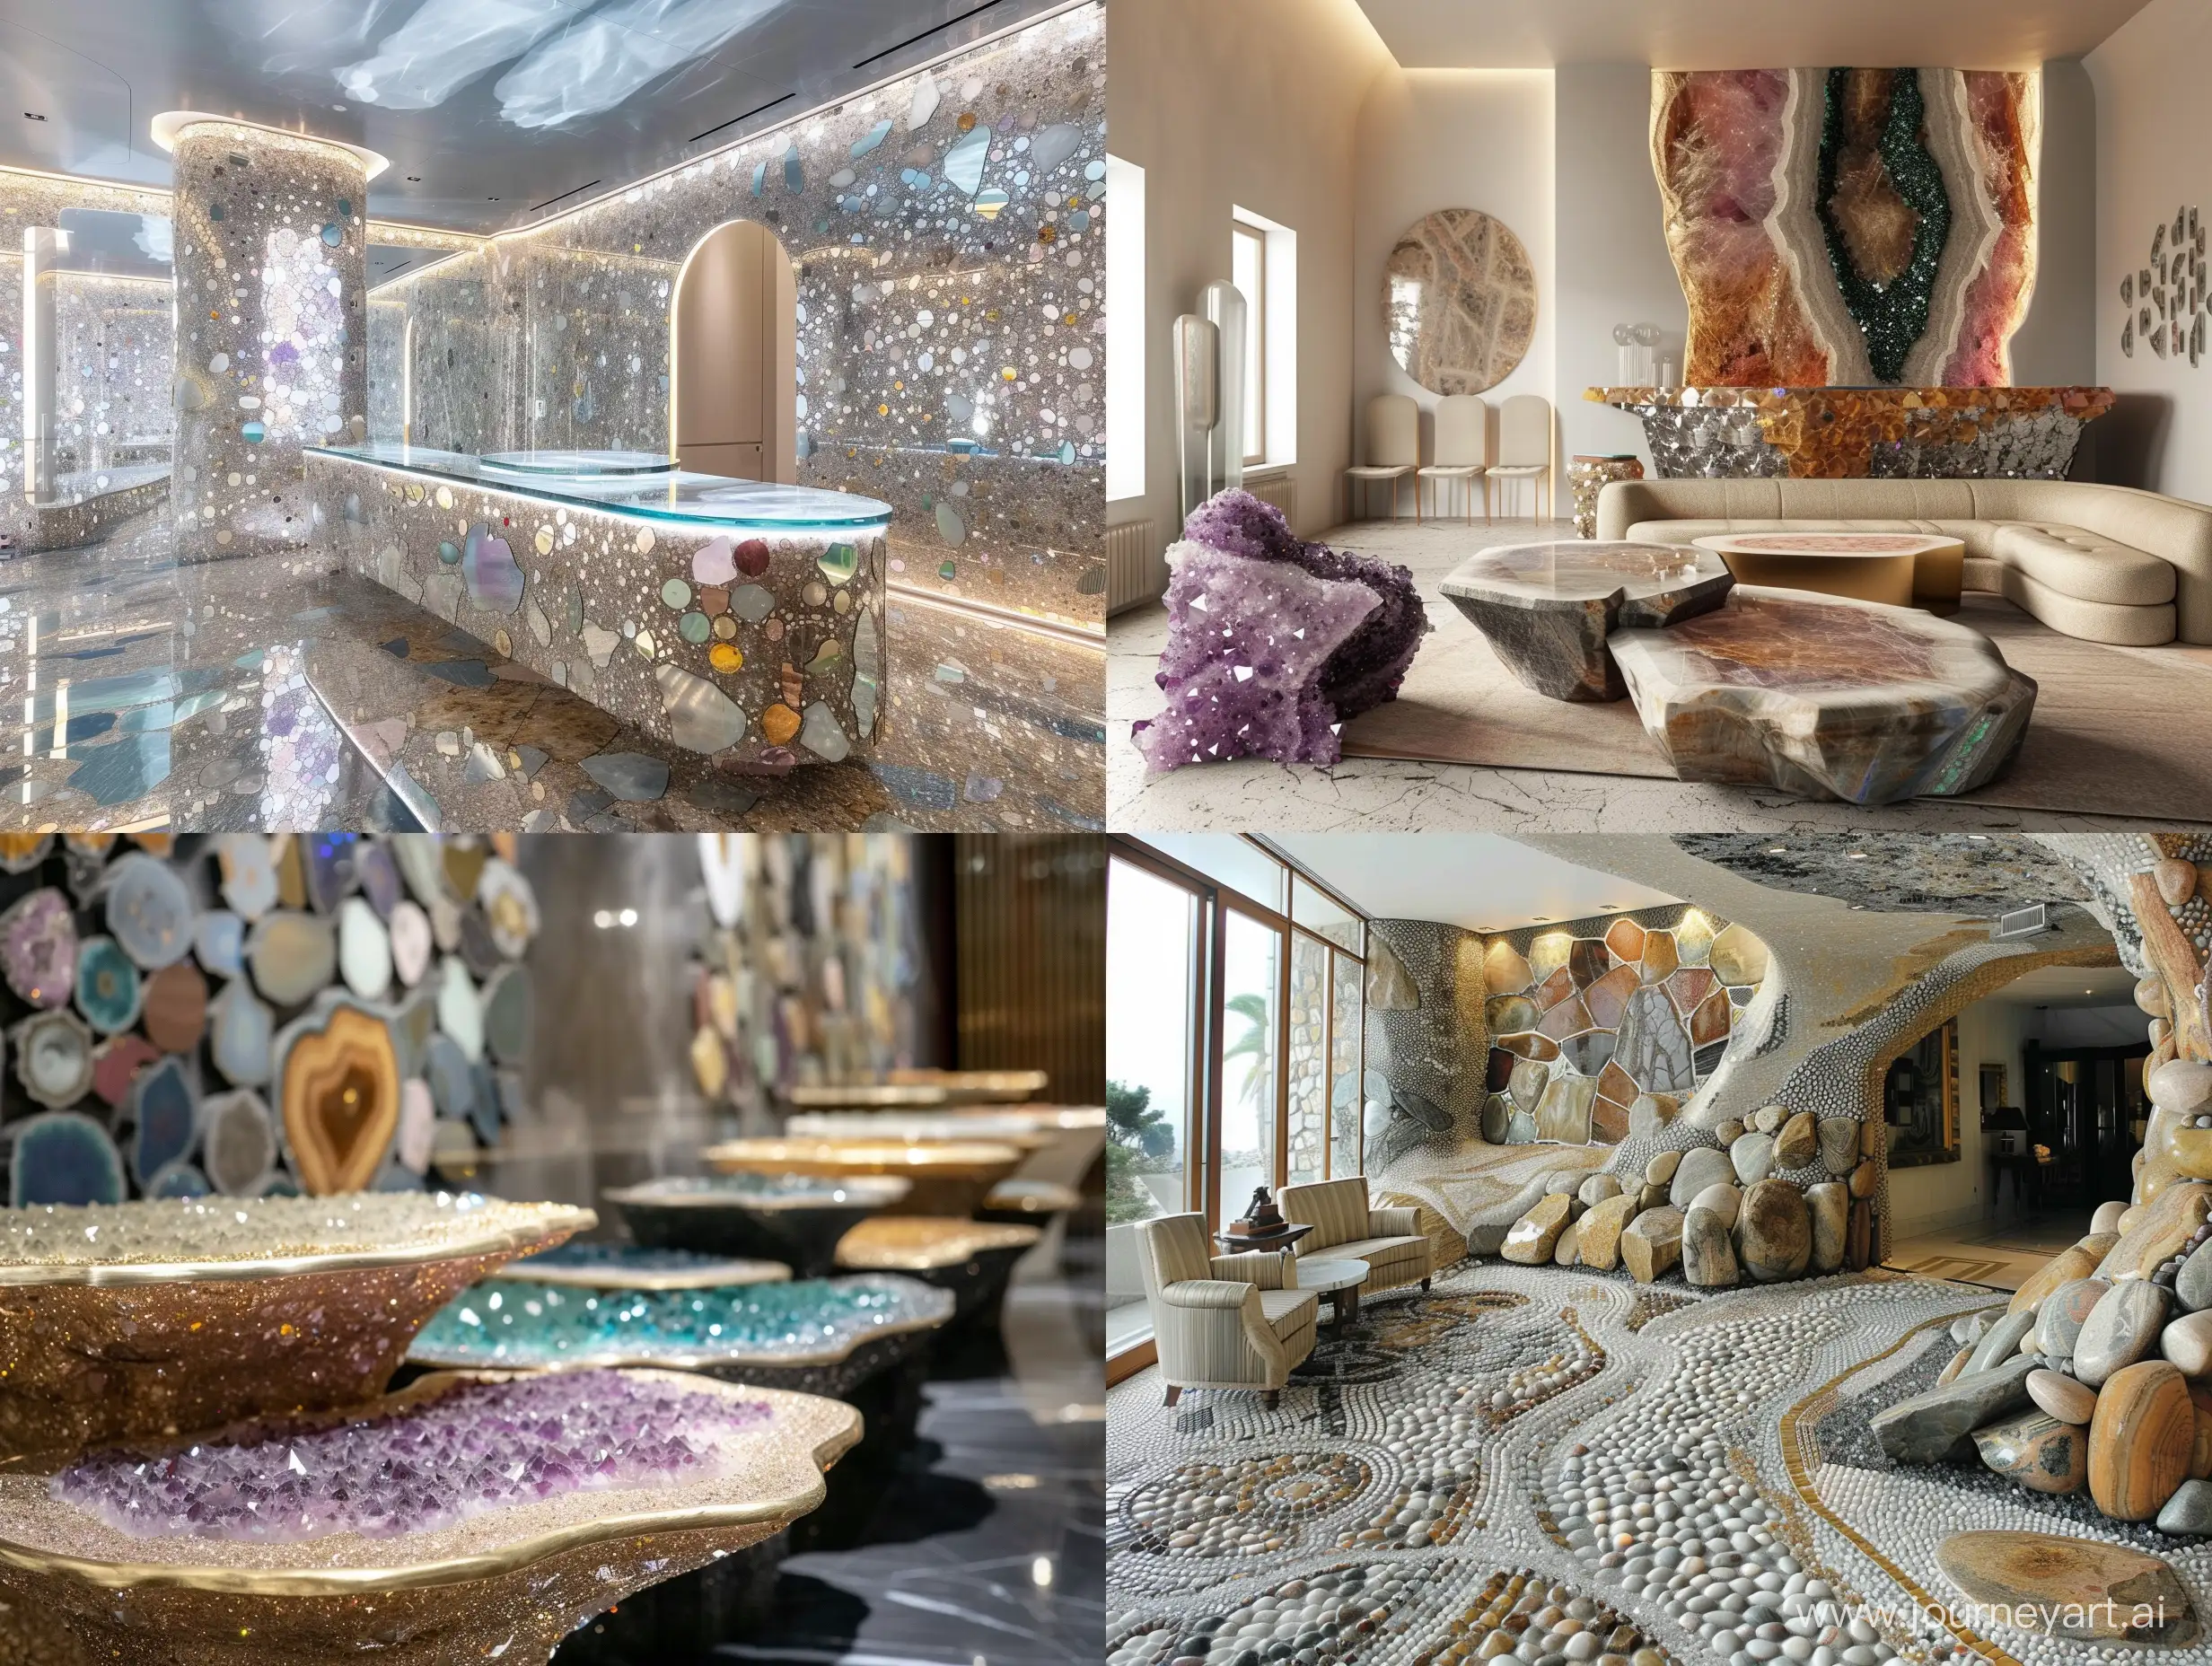 A lobby made with precious stones